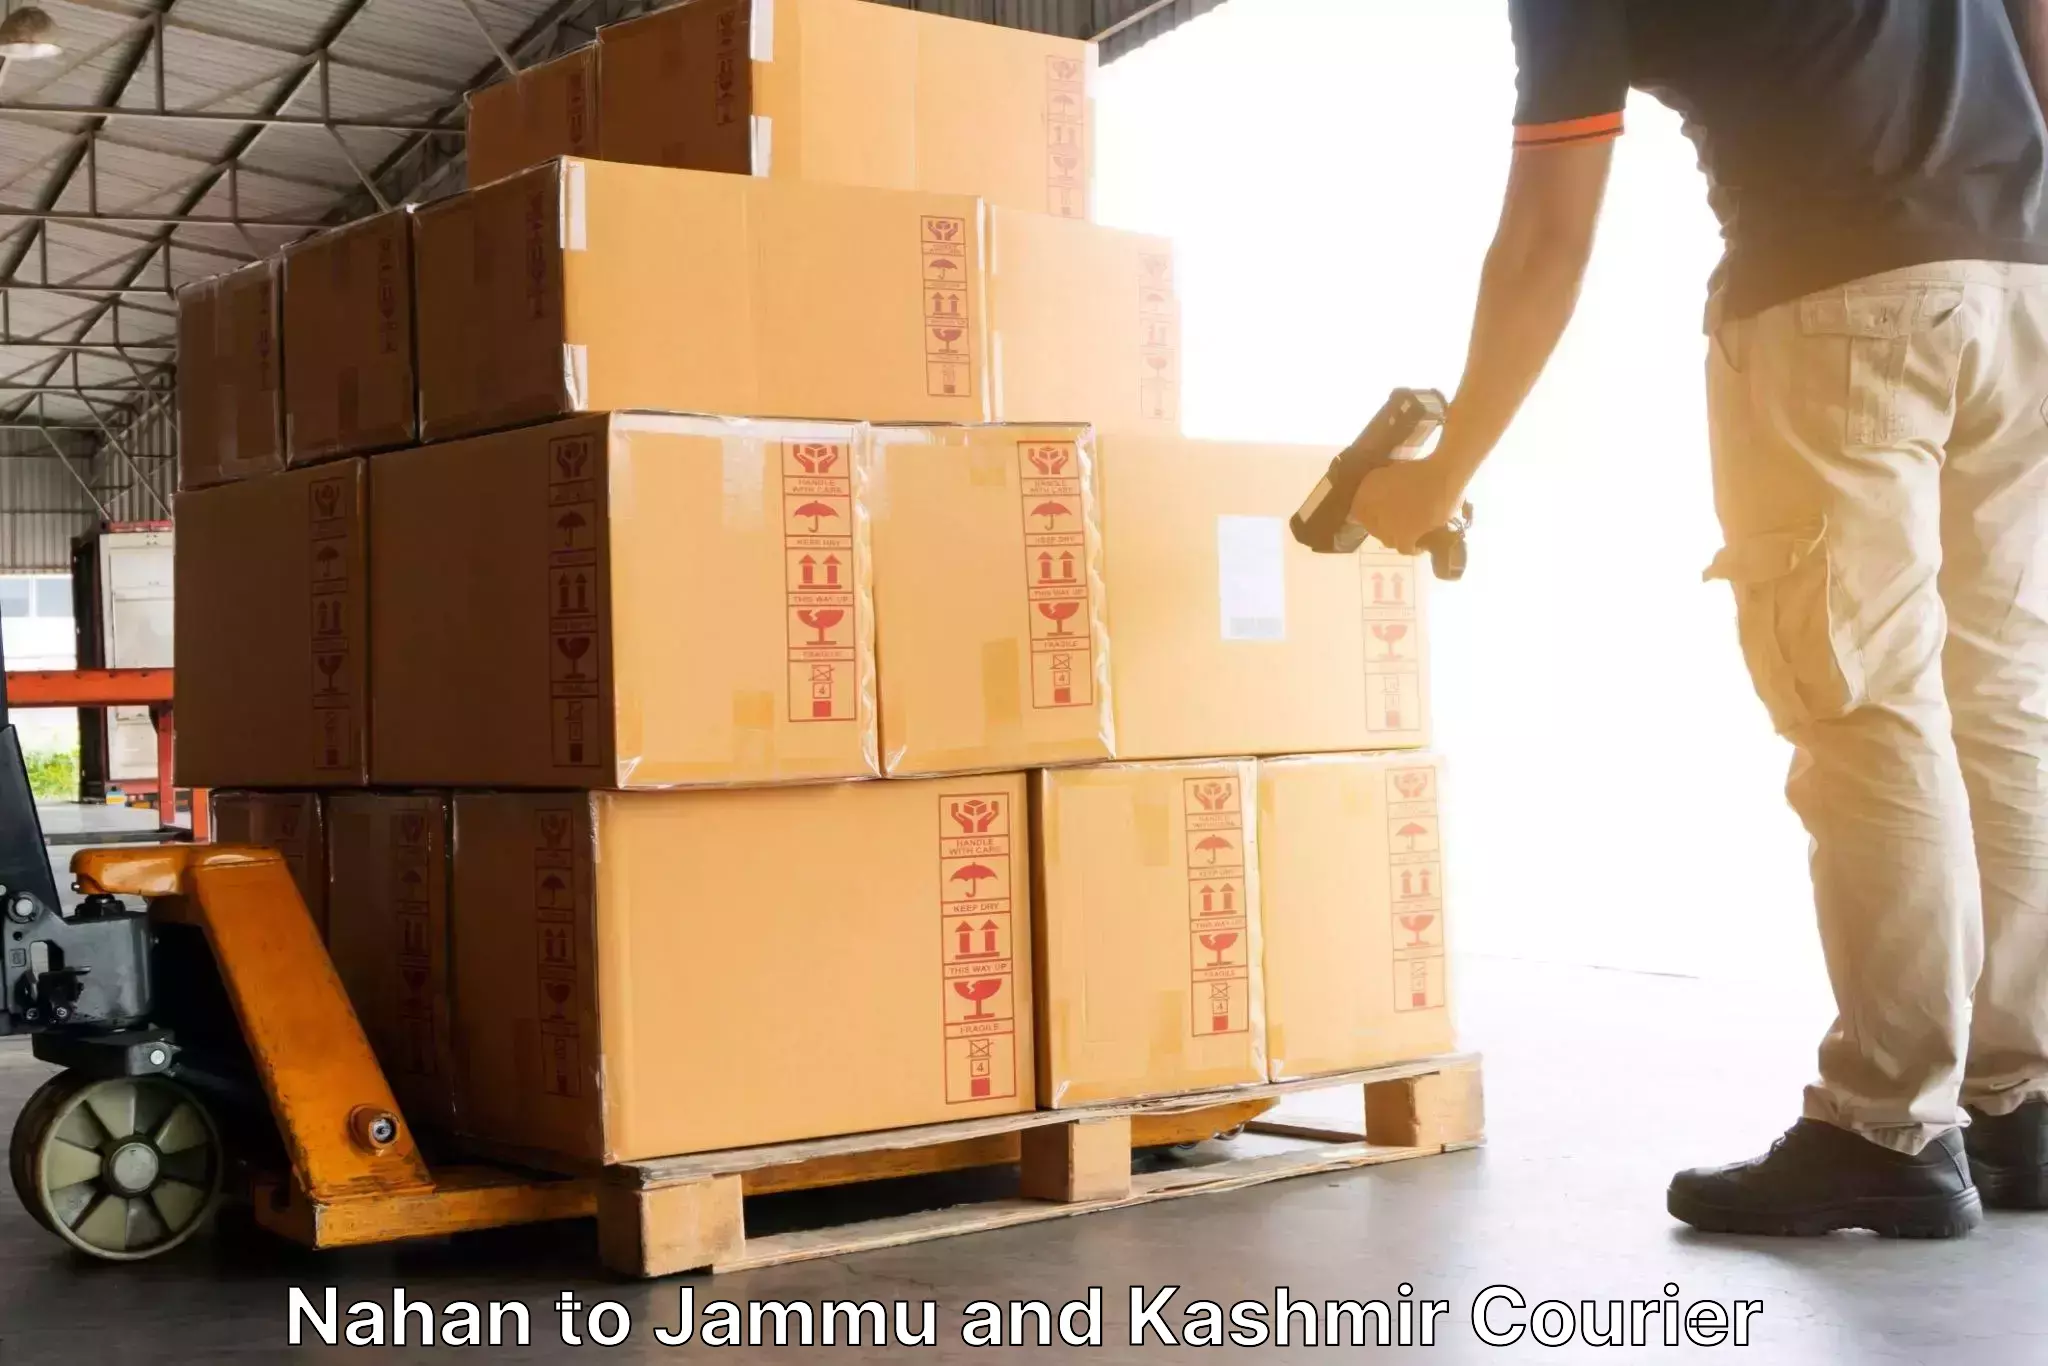 Express courier capabilities Nahan to Ramban